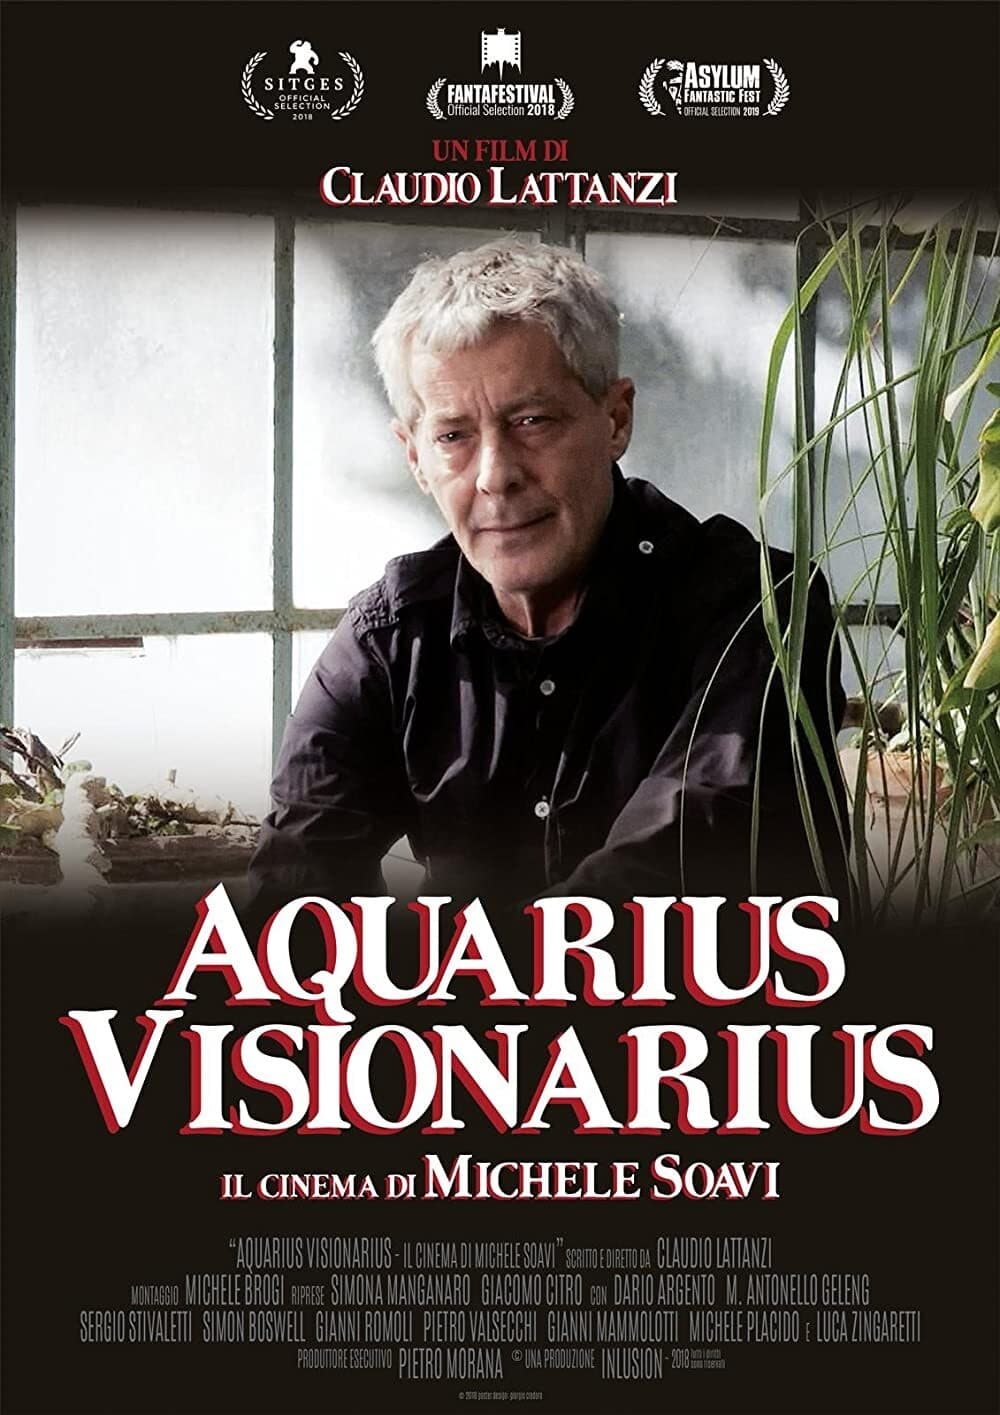 Aquarius Visionarius - Il cinema di Michele Soavi